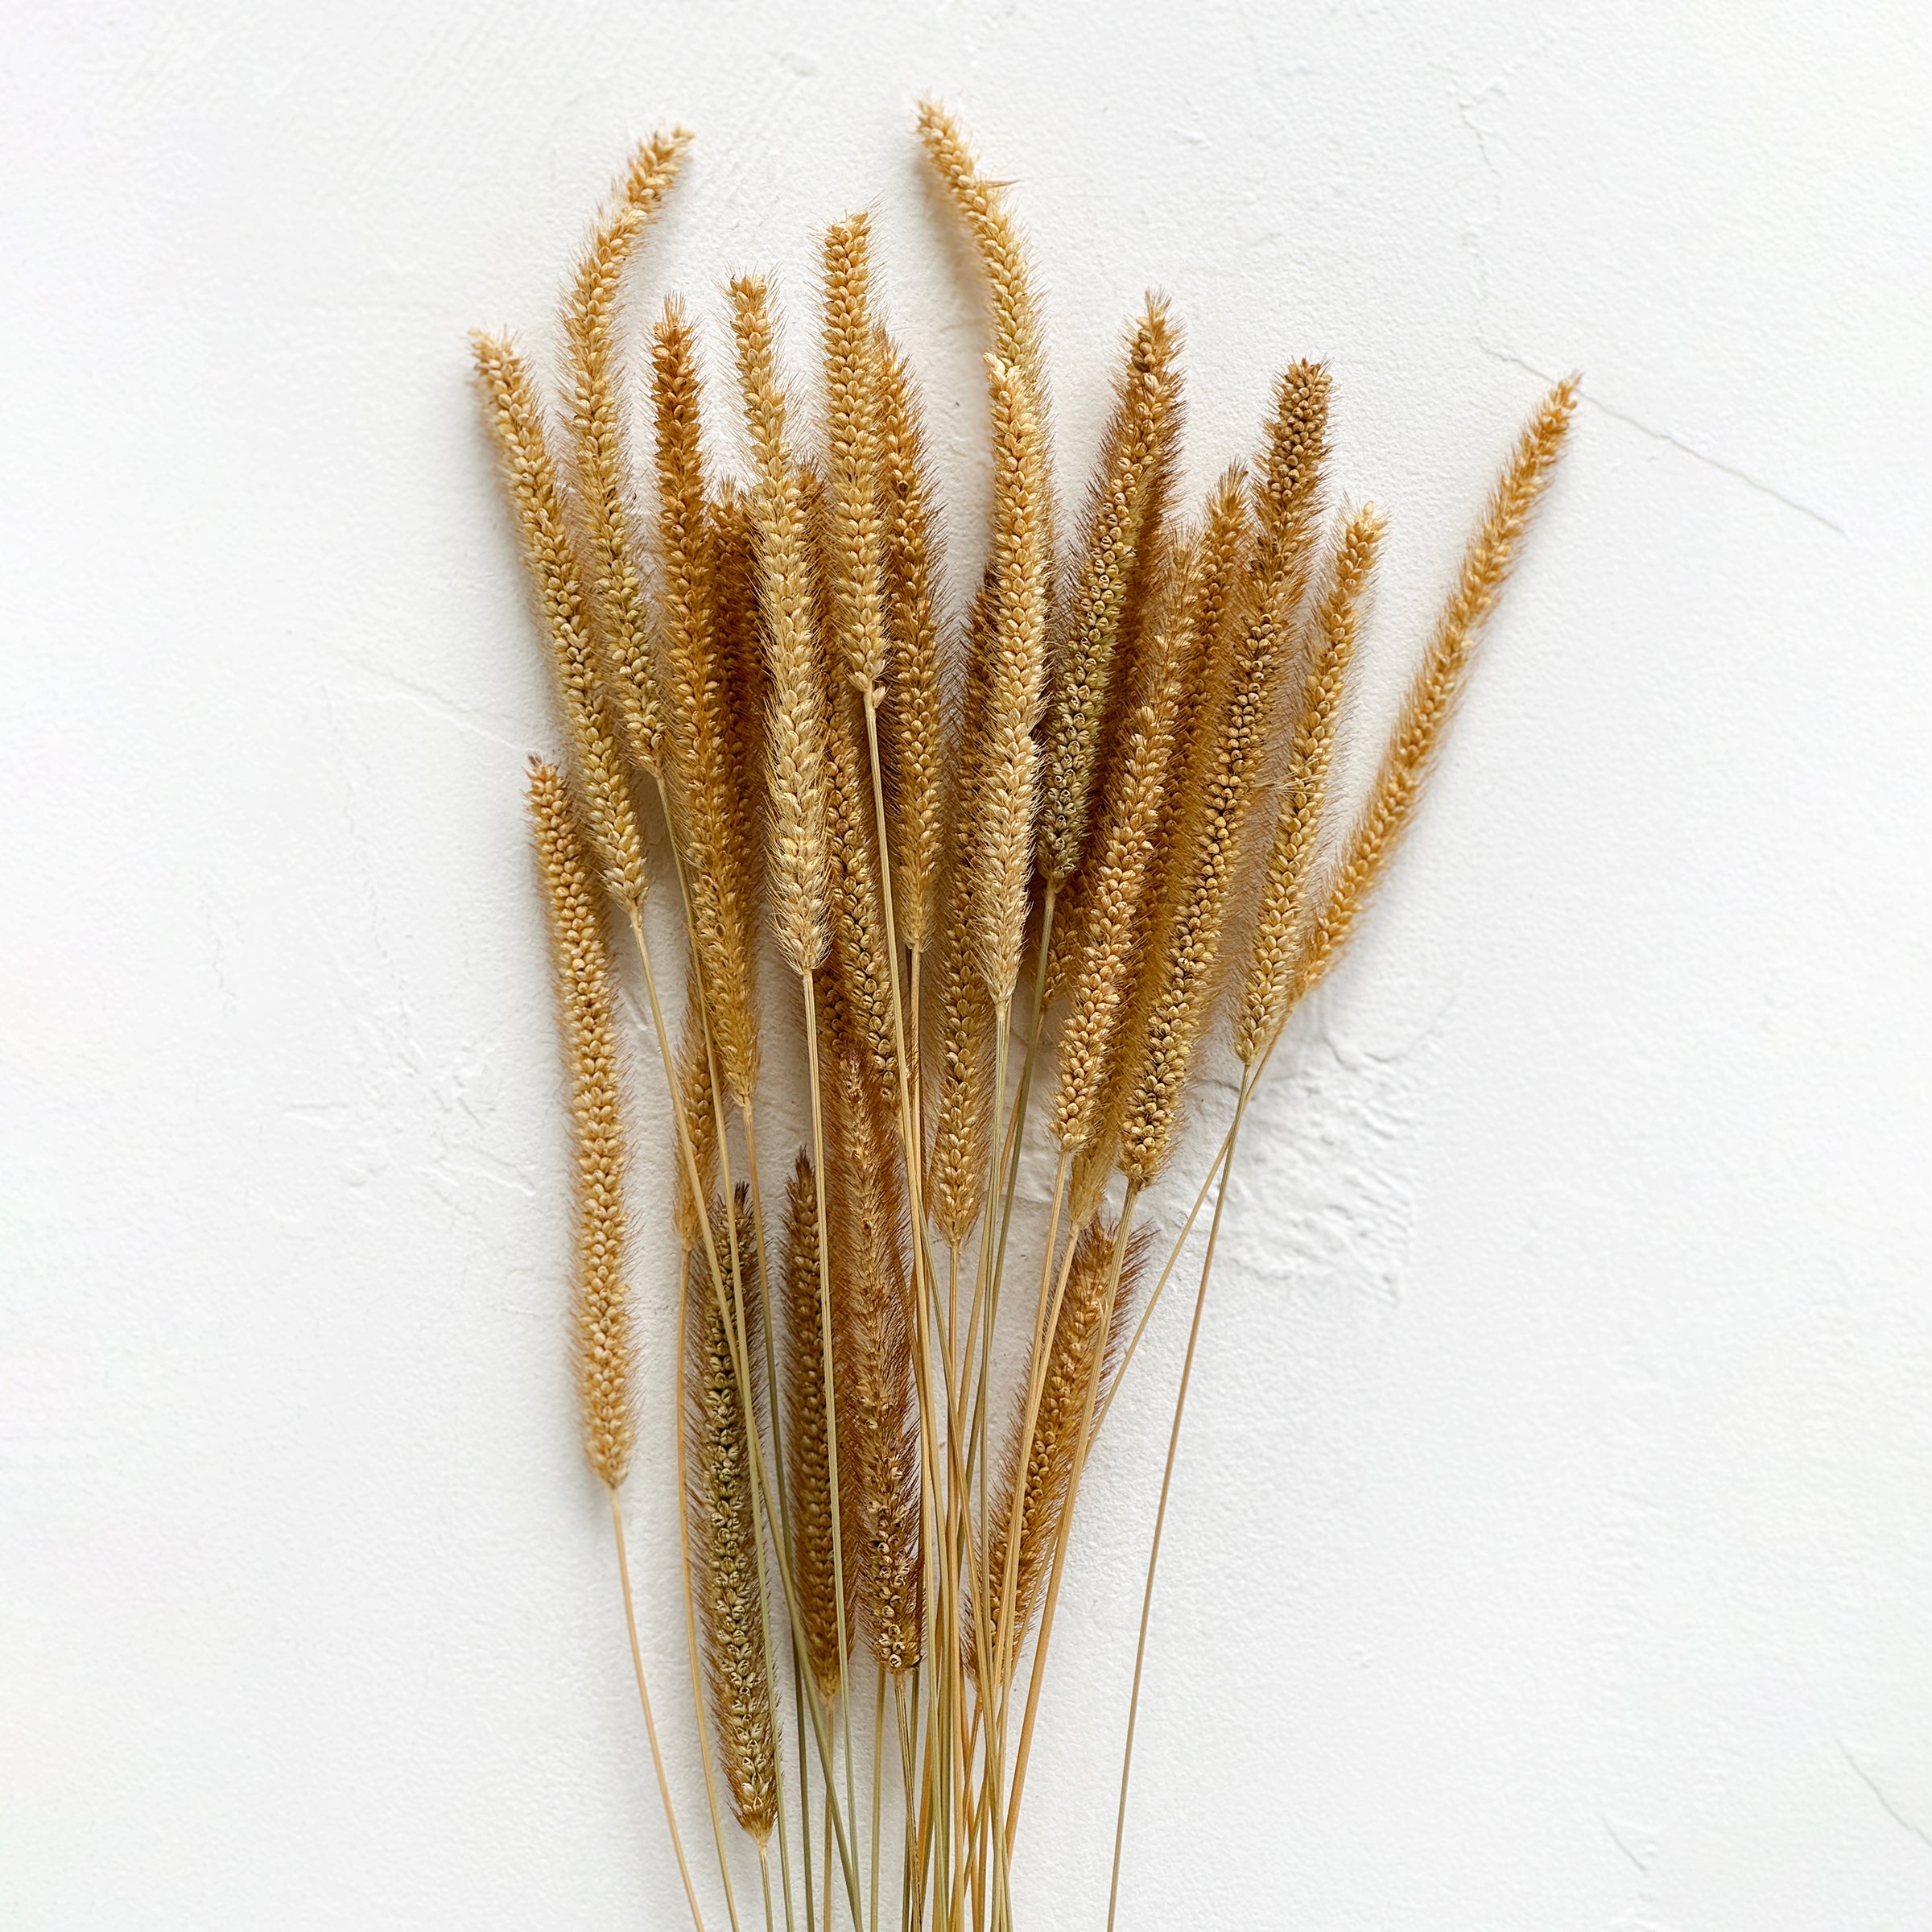 Dried Golden Grass